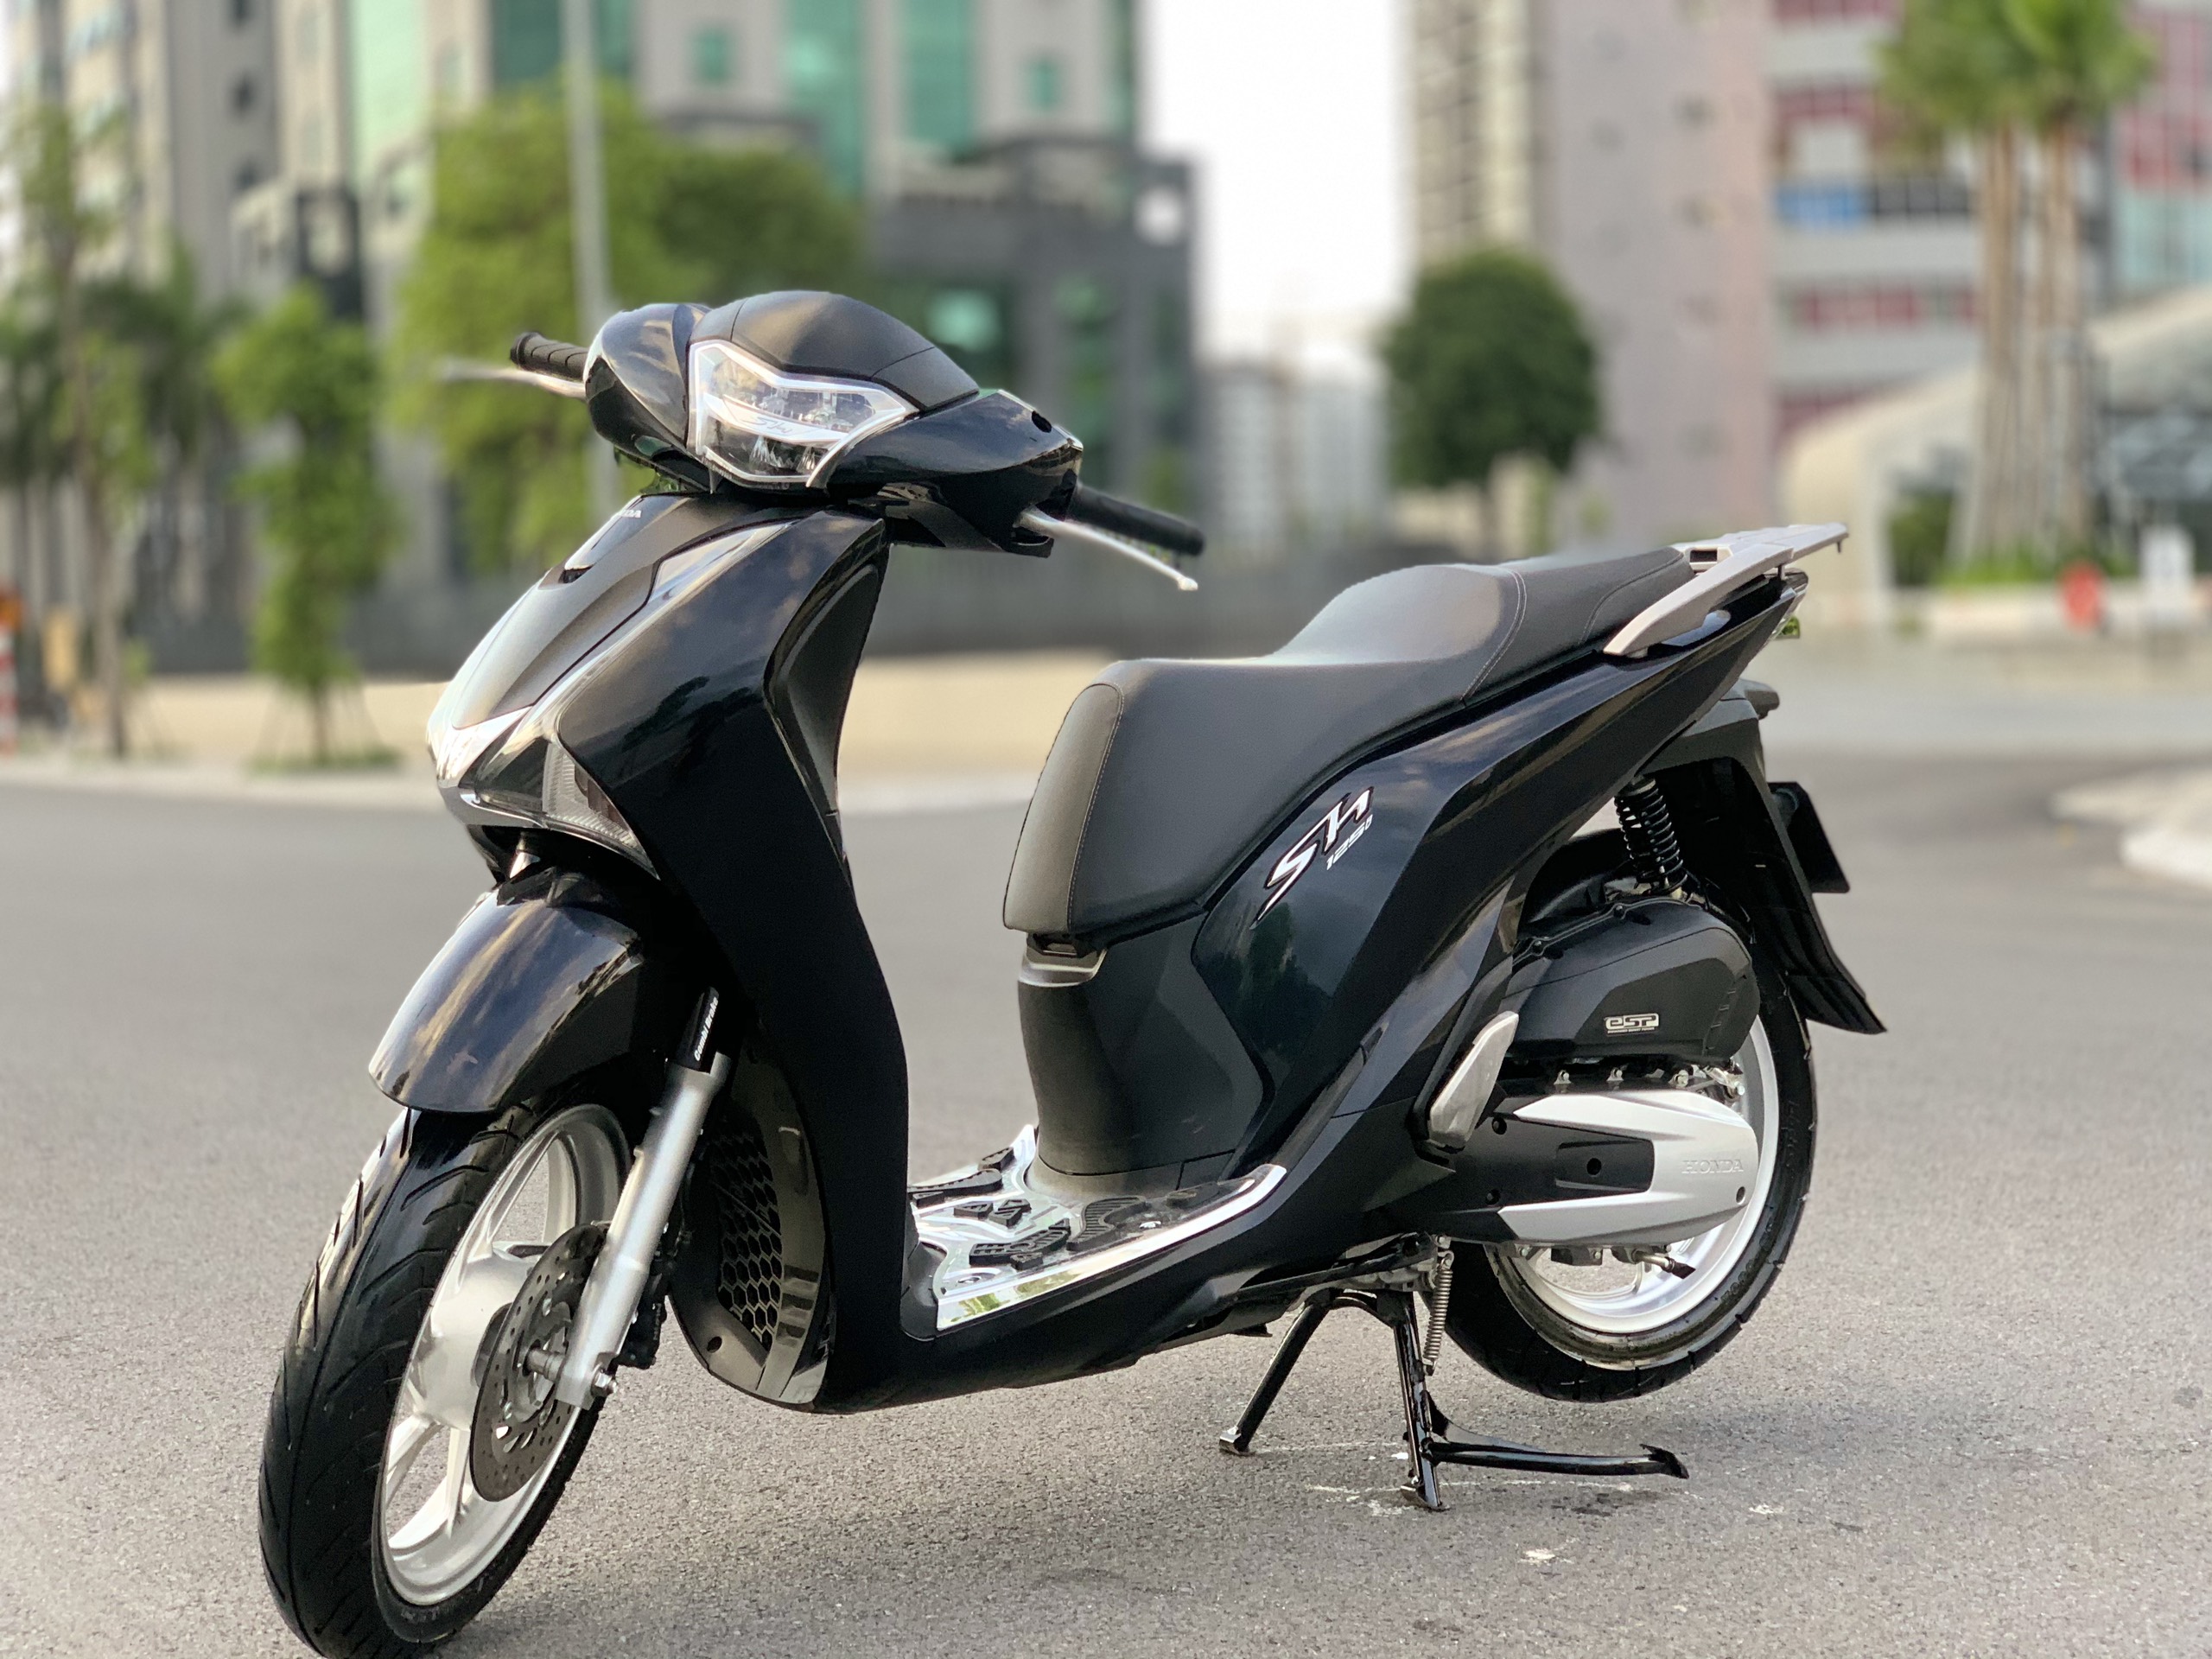 Đánh giá chi tiết xe Honda SH 150i ABS Việt Nam 2019 phiên bản màu Đỏ   YouTube